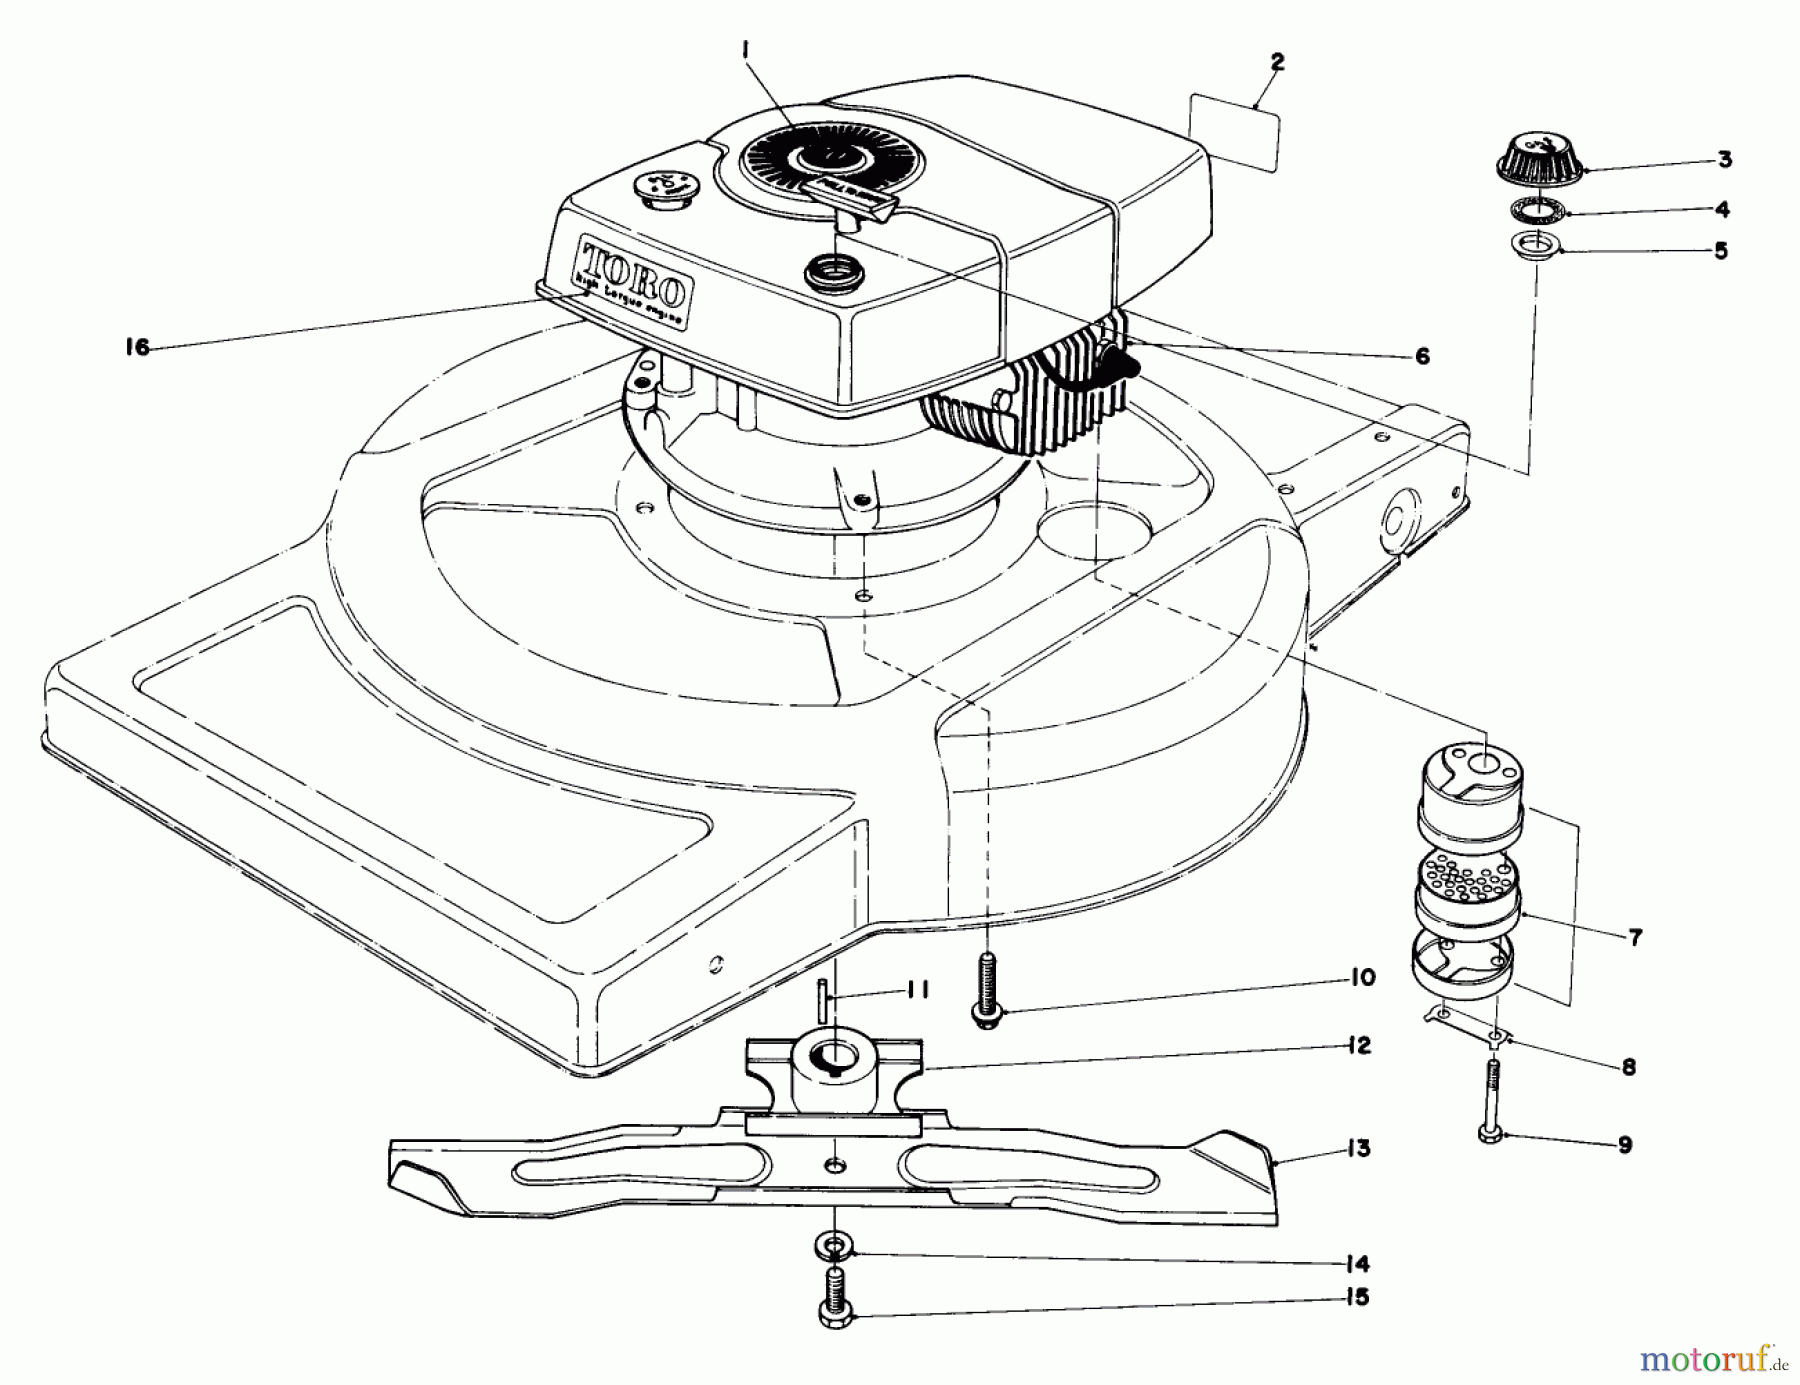  Toro Neu Mowers, Walk-Behind Seite 1 18060 - Toro Lawnmower, 1978 (8000001-8999999) ENGINE ASSEMBLY MODEL 18015